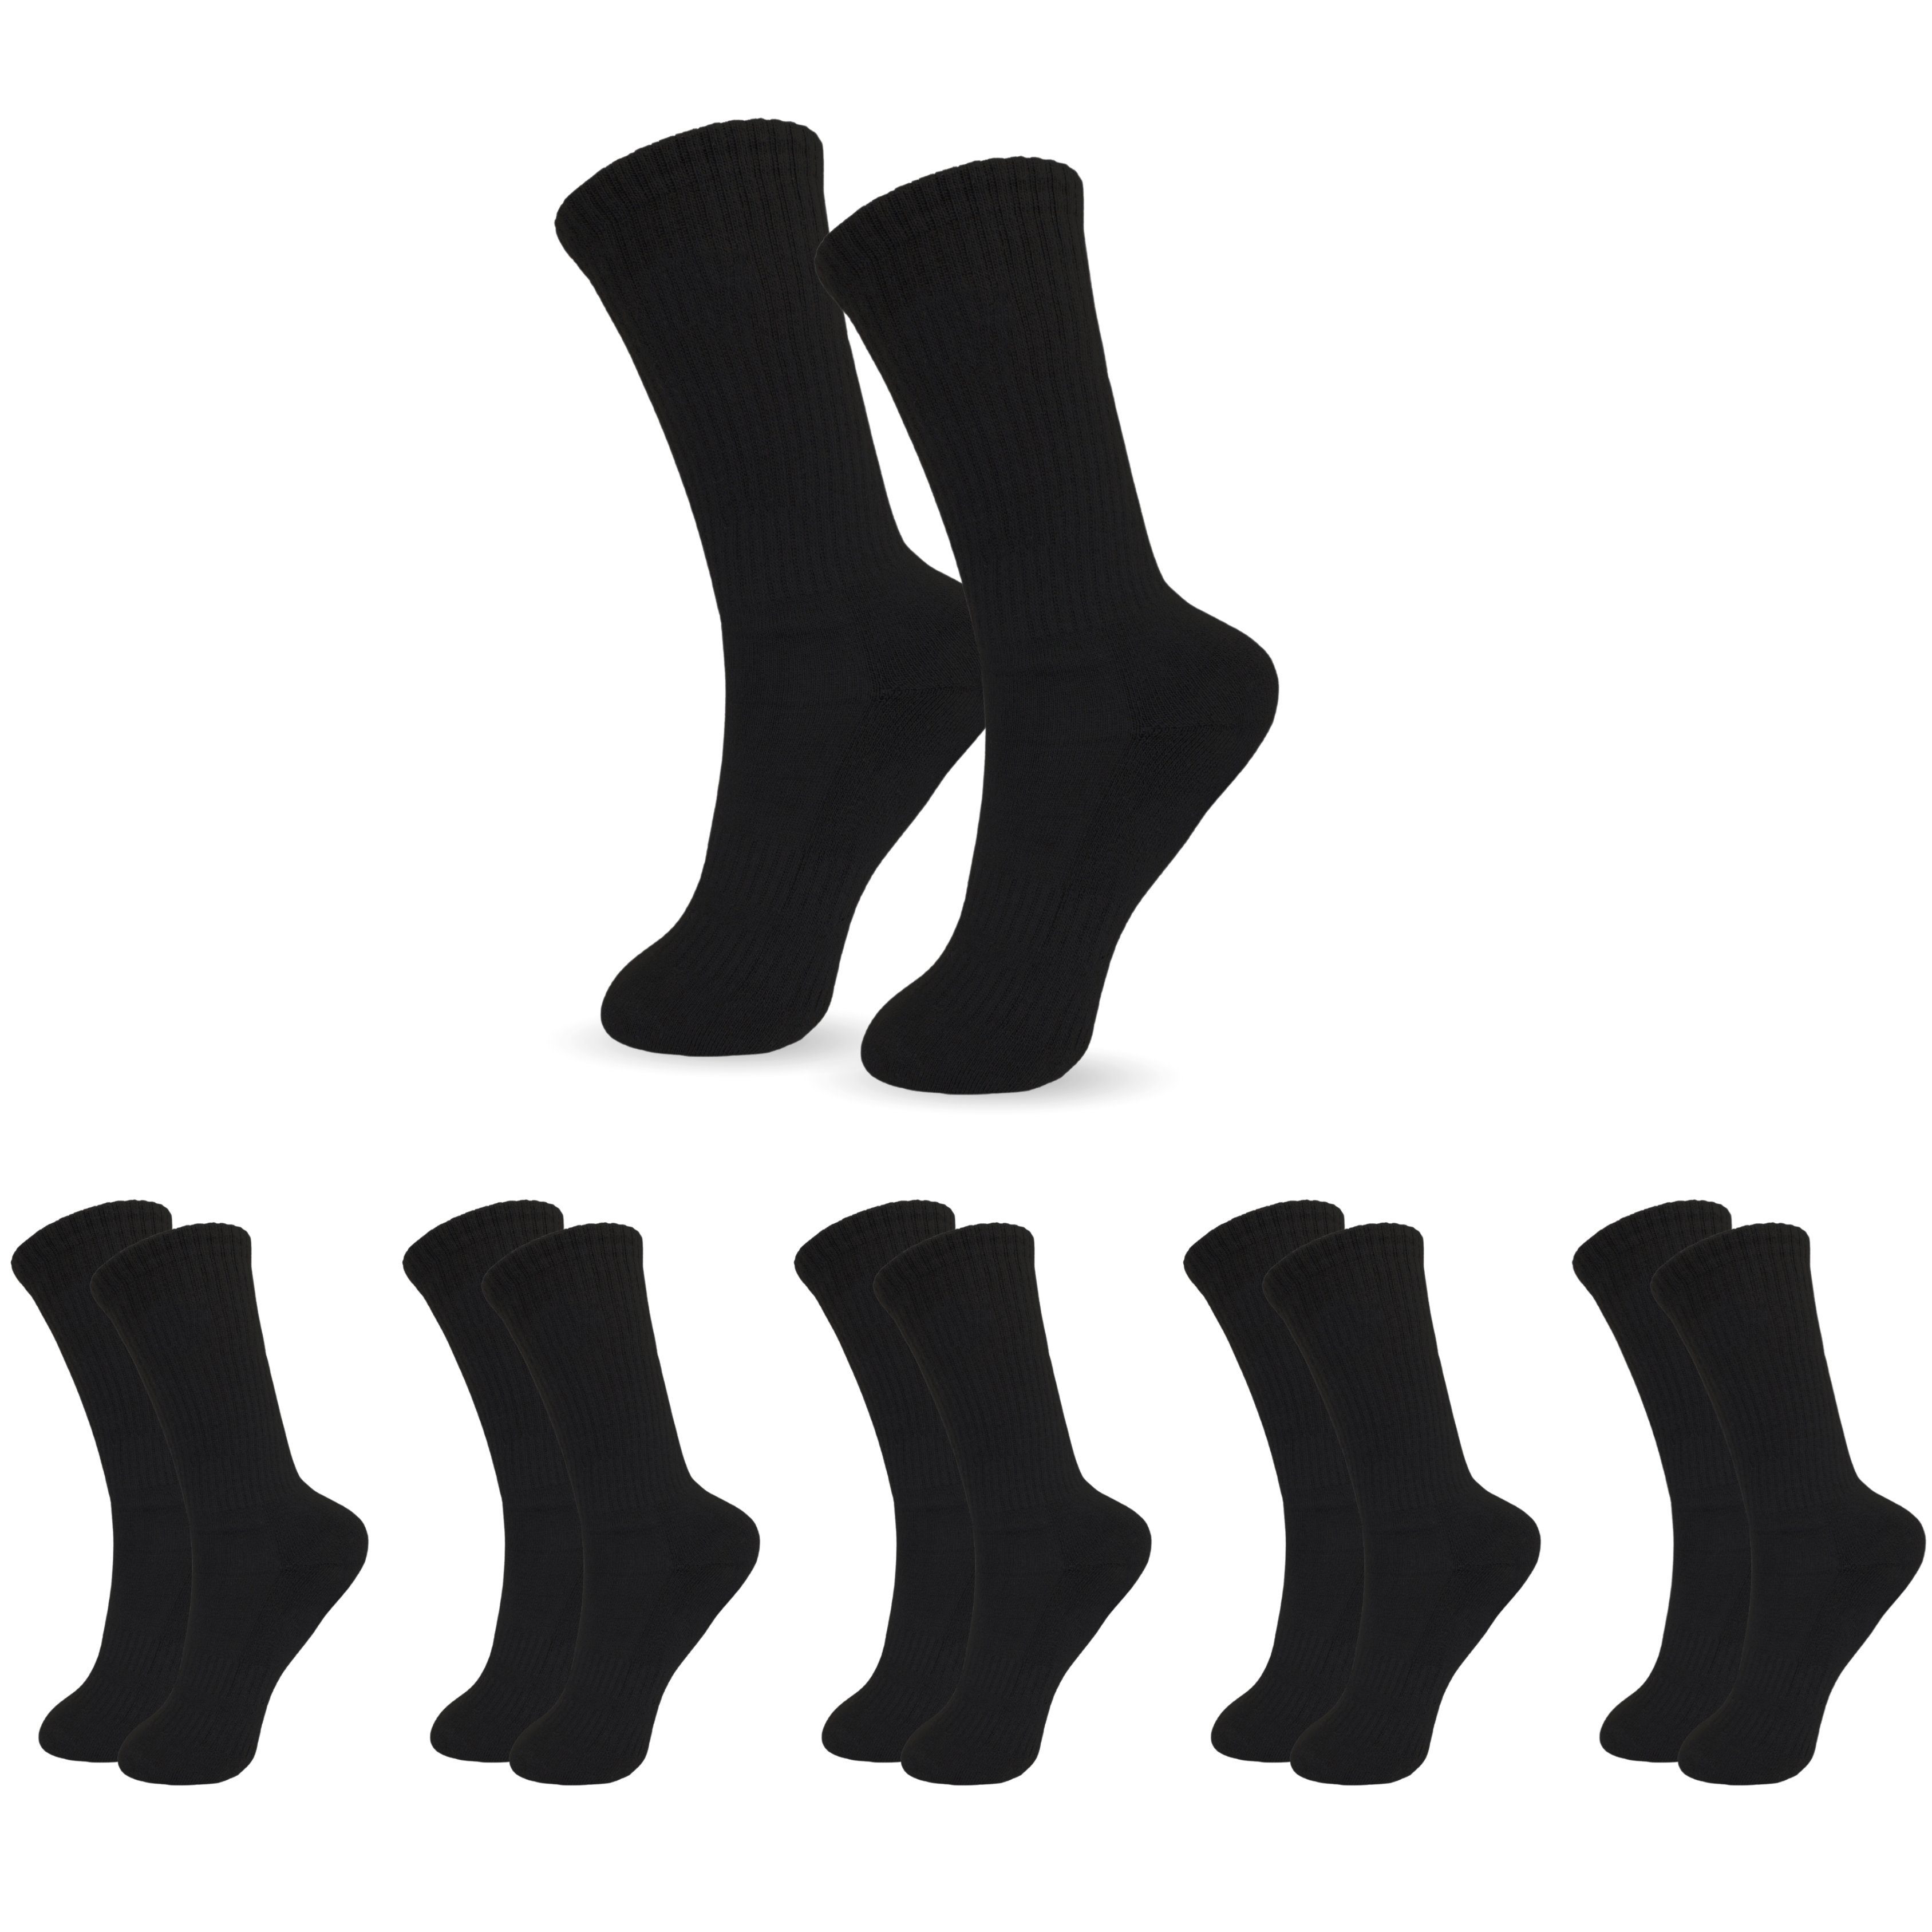 Sport Für Funktion Socken Atmungsaktive Lange & 5-15er Freizeit-Socken aus Baumwolle Naht, Schwarz Schwarz-5x Tennissocken Herren 5x Pack) drückende (ohne SO.I Damen